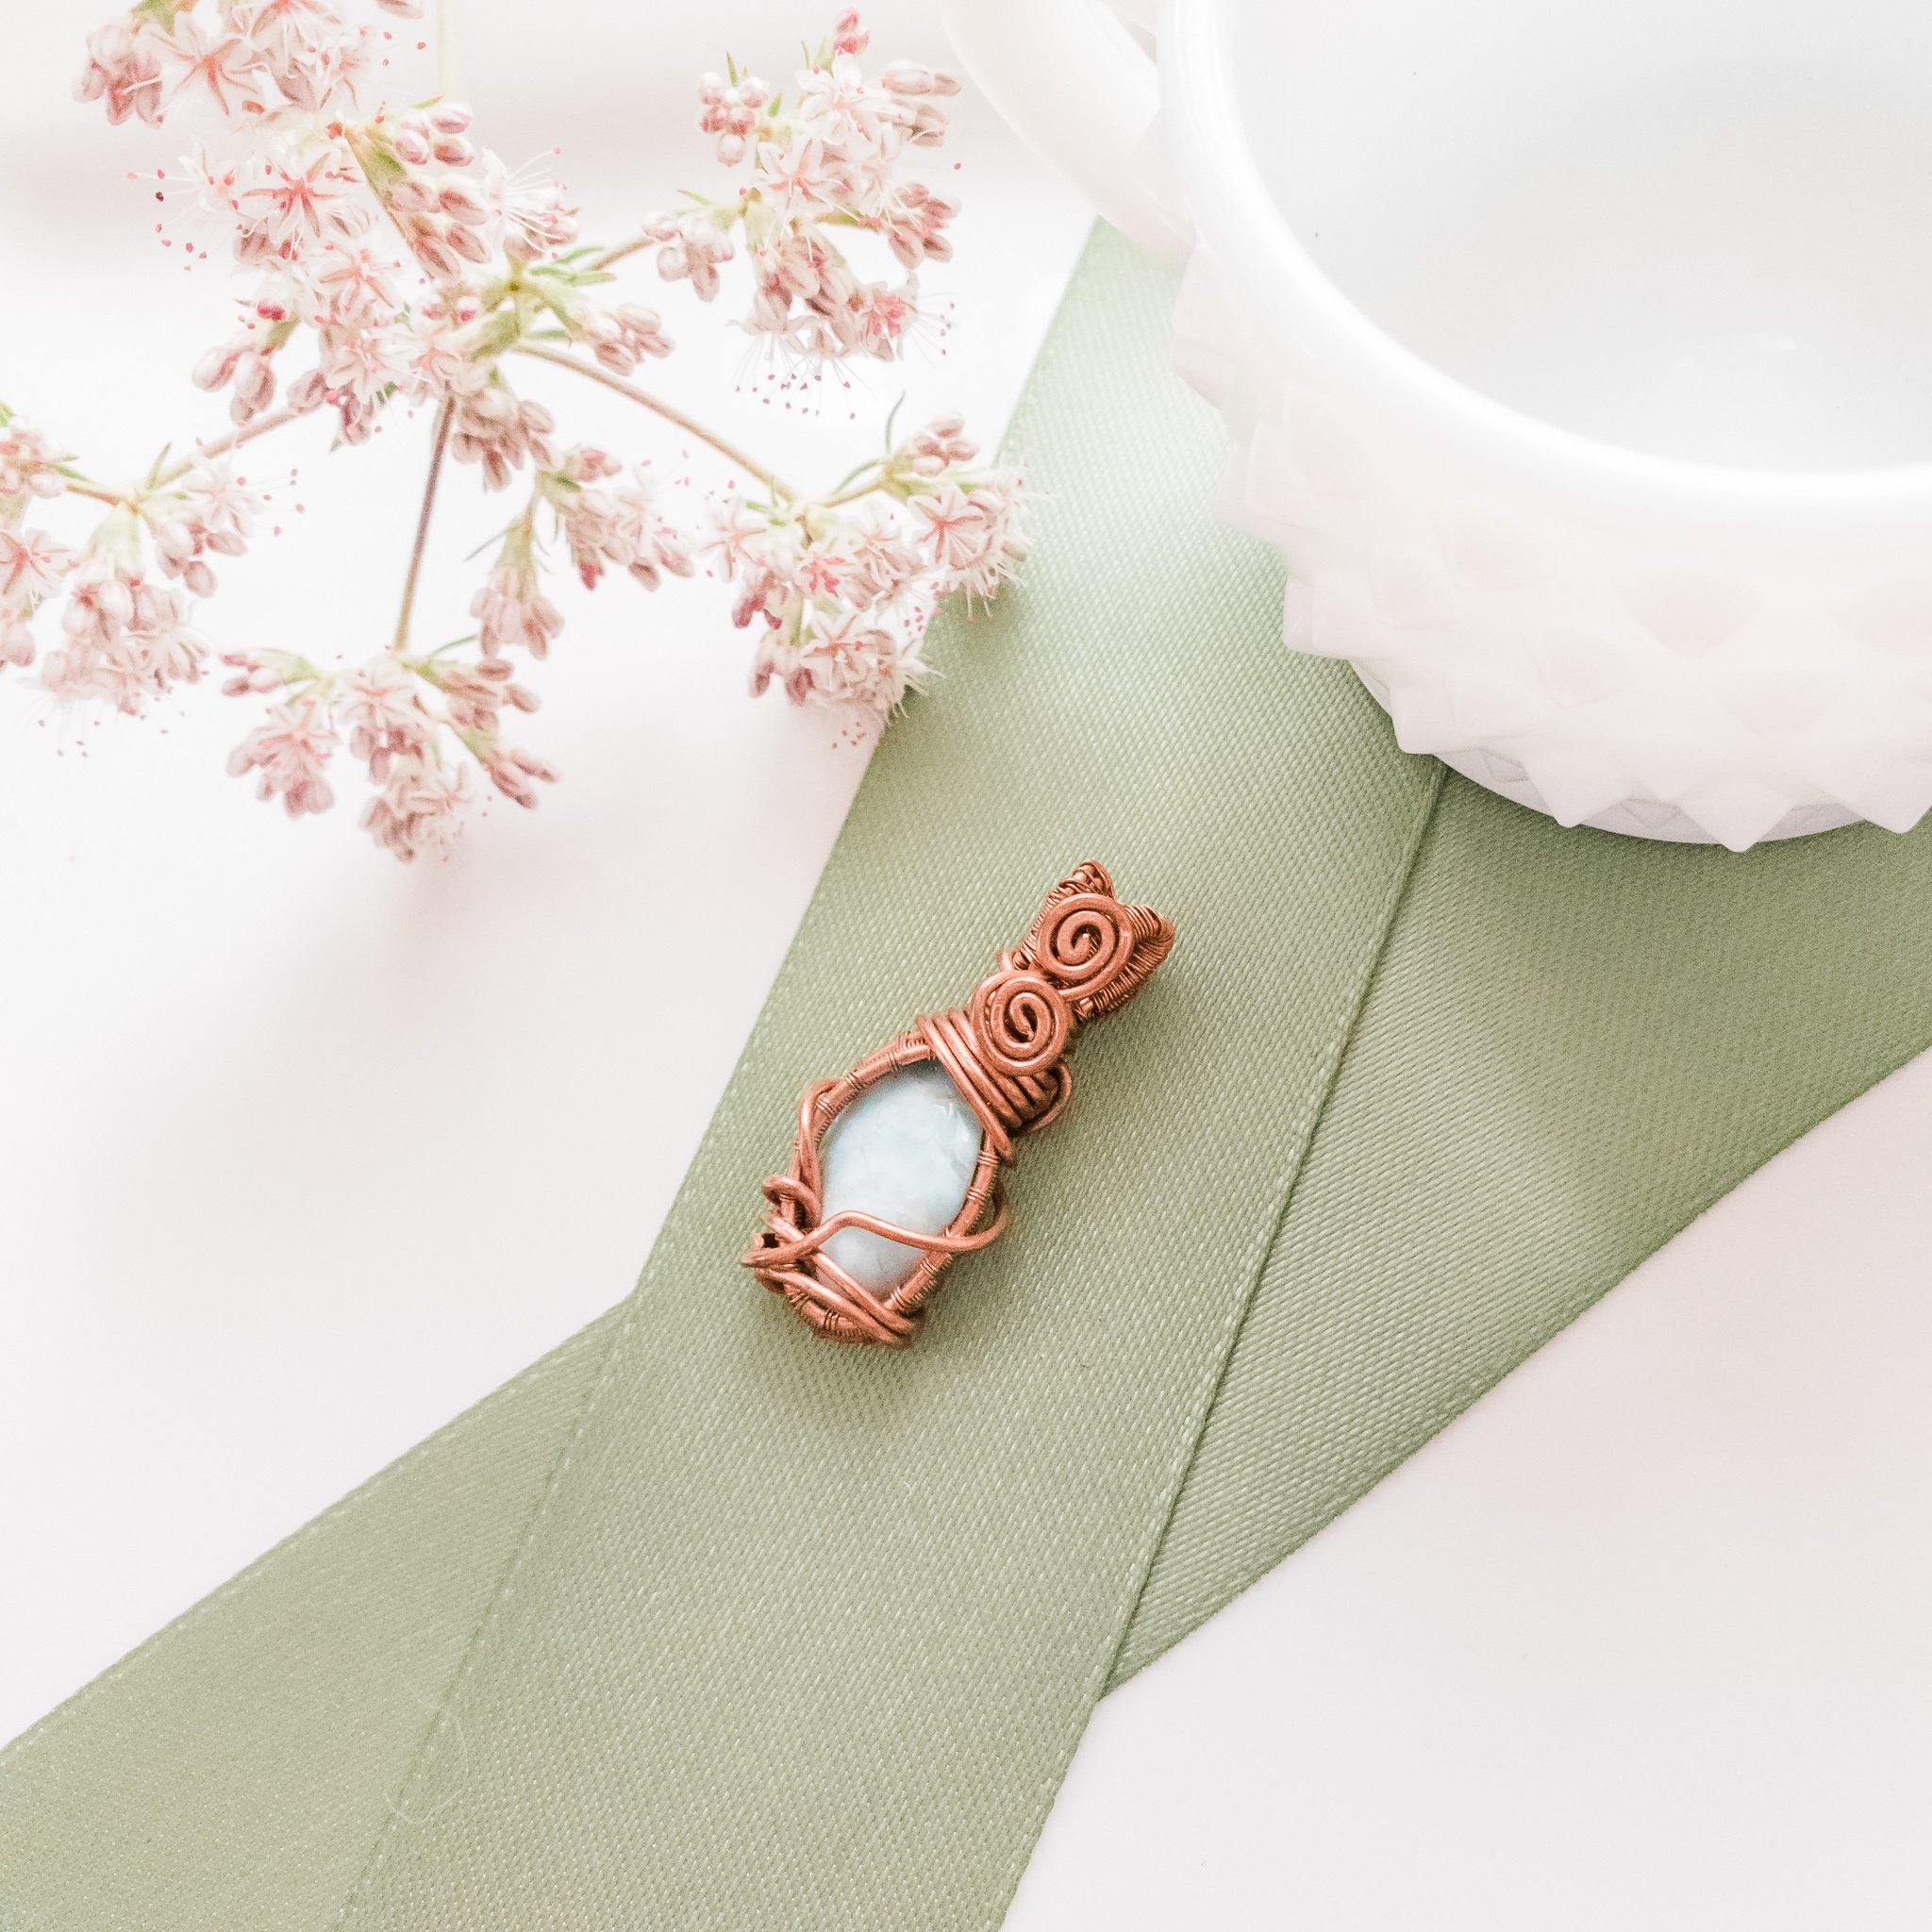 Larimar Gemstone Necklace Pendant weaved in Antique Copper - front view - BellaChel Jeweler